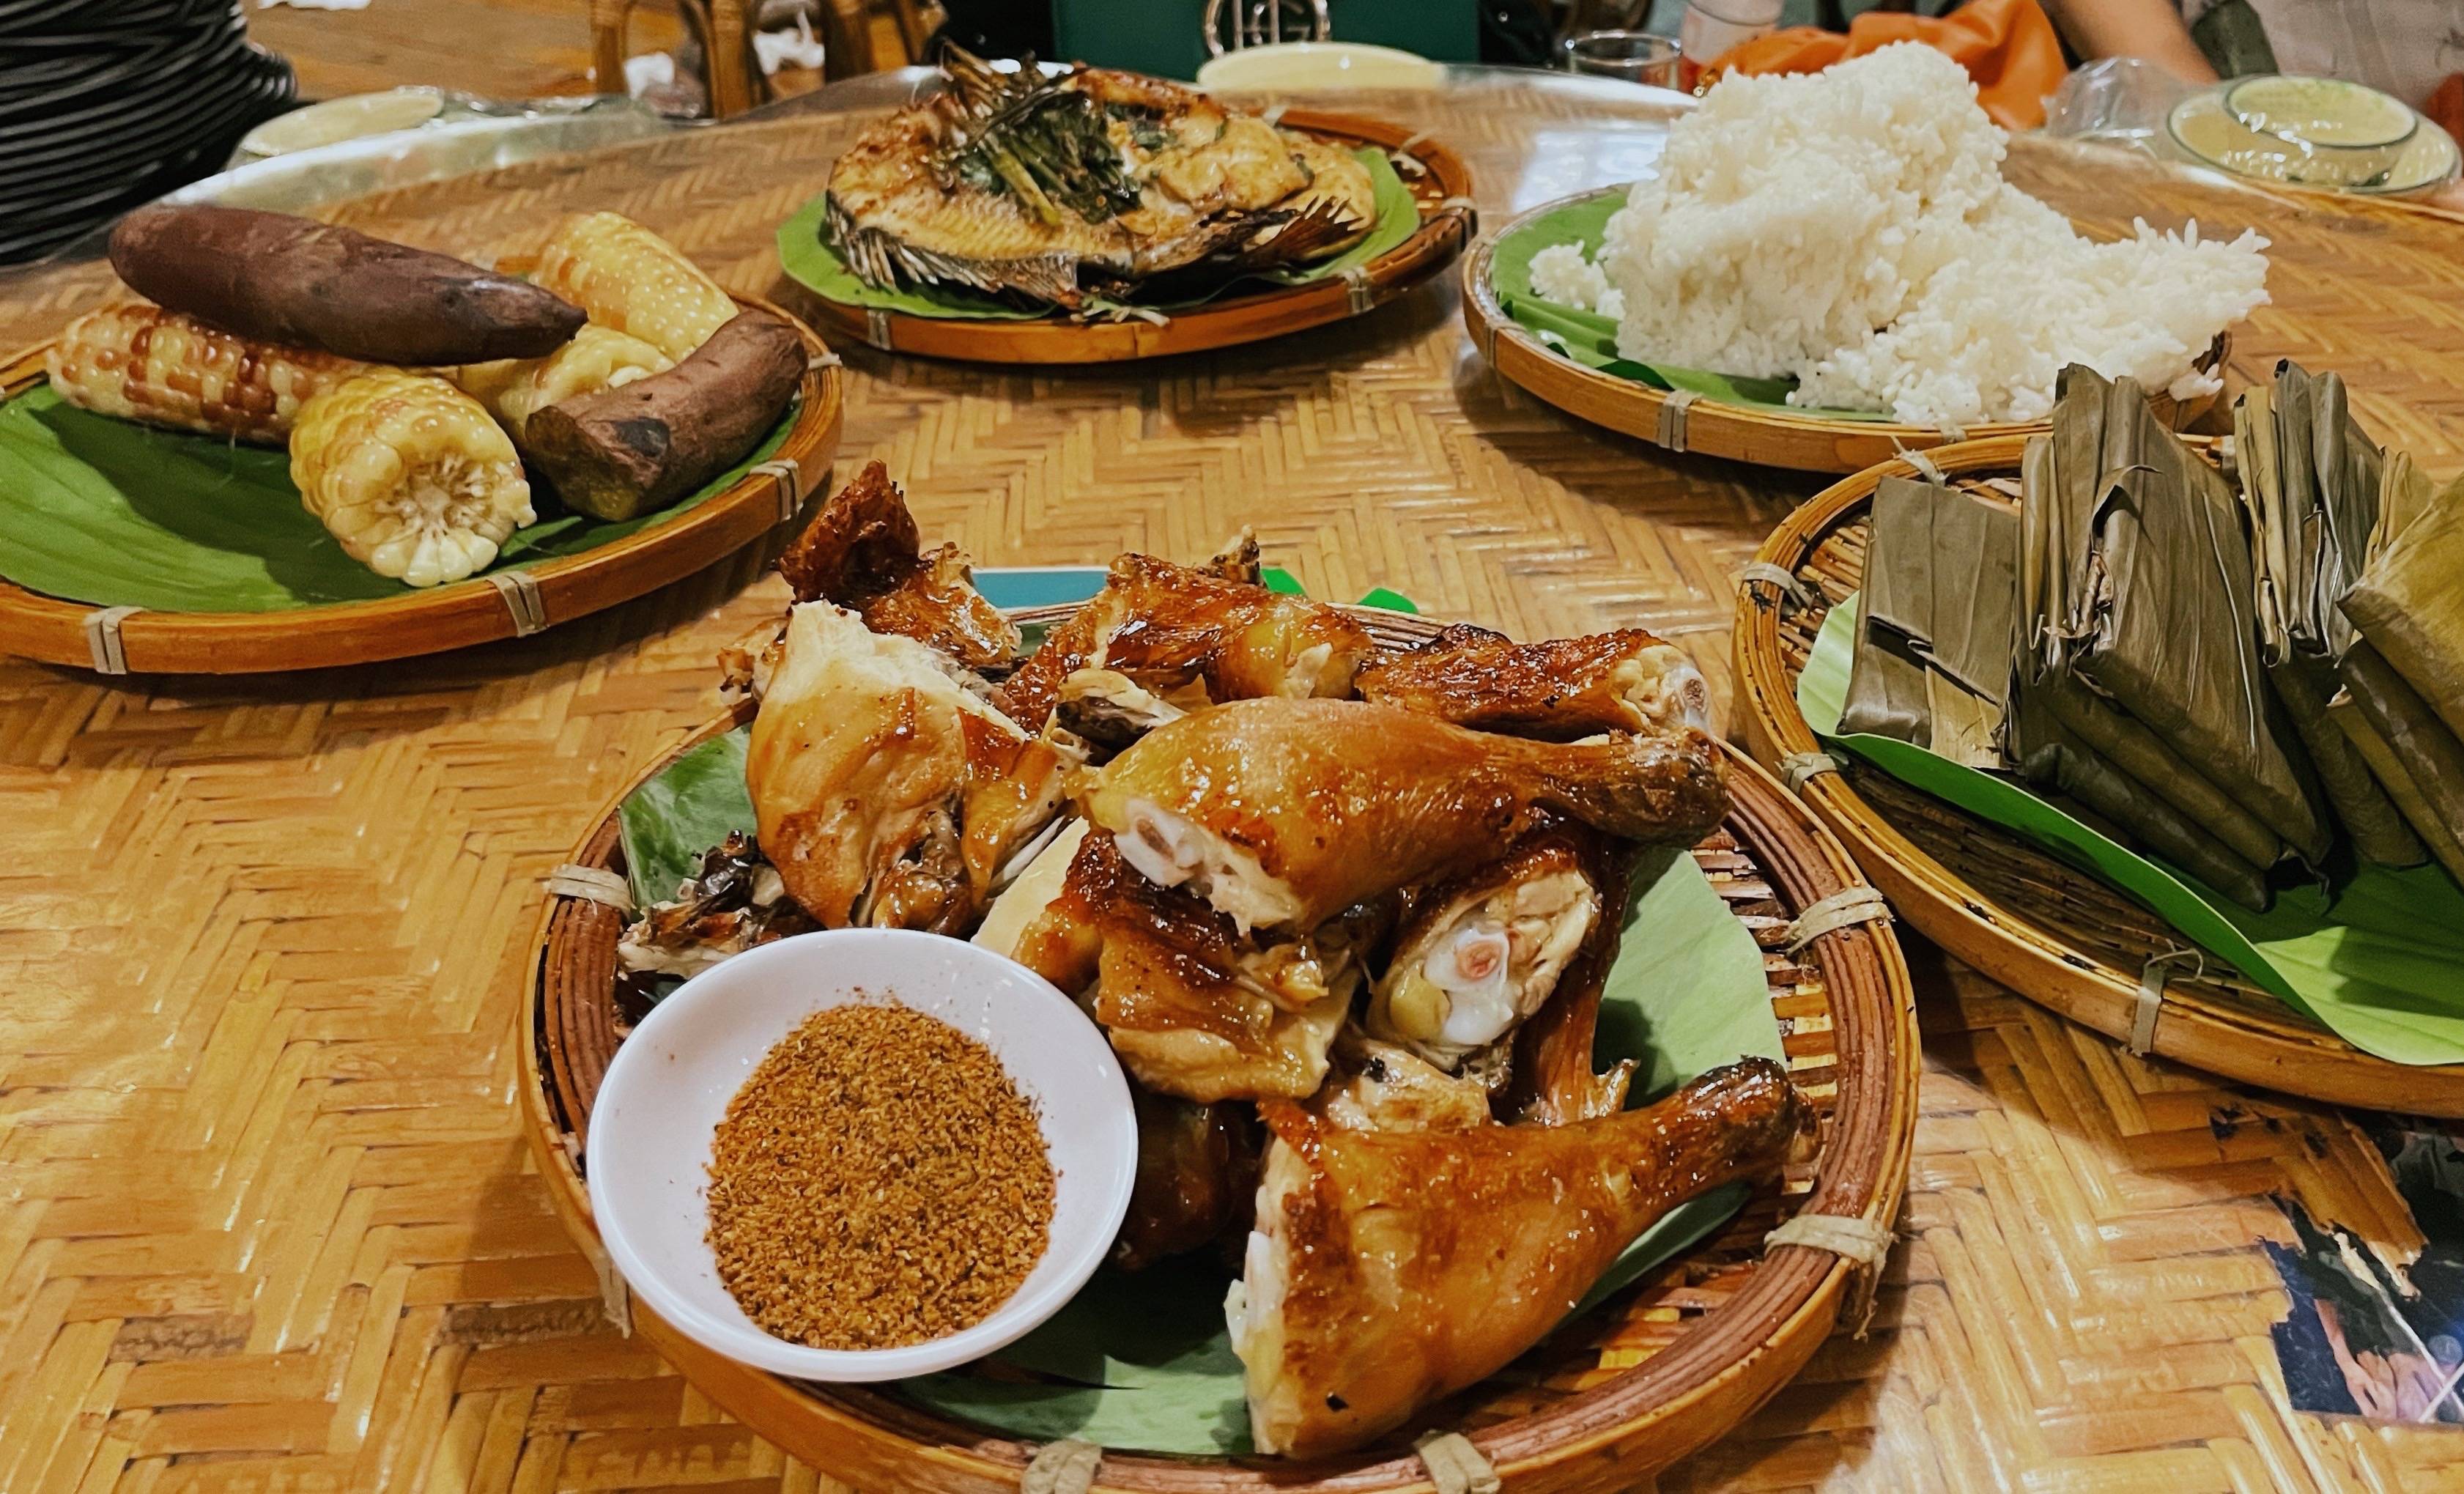 傣族的饮食文化,不用碗,不用筷子,吃饭都用手抓